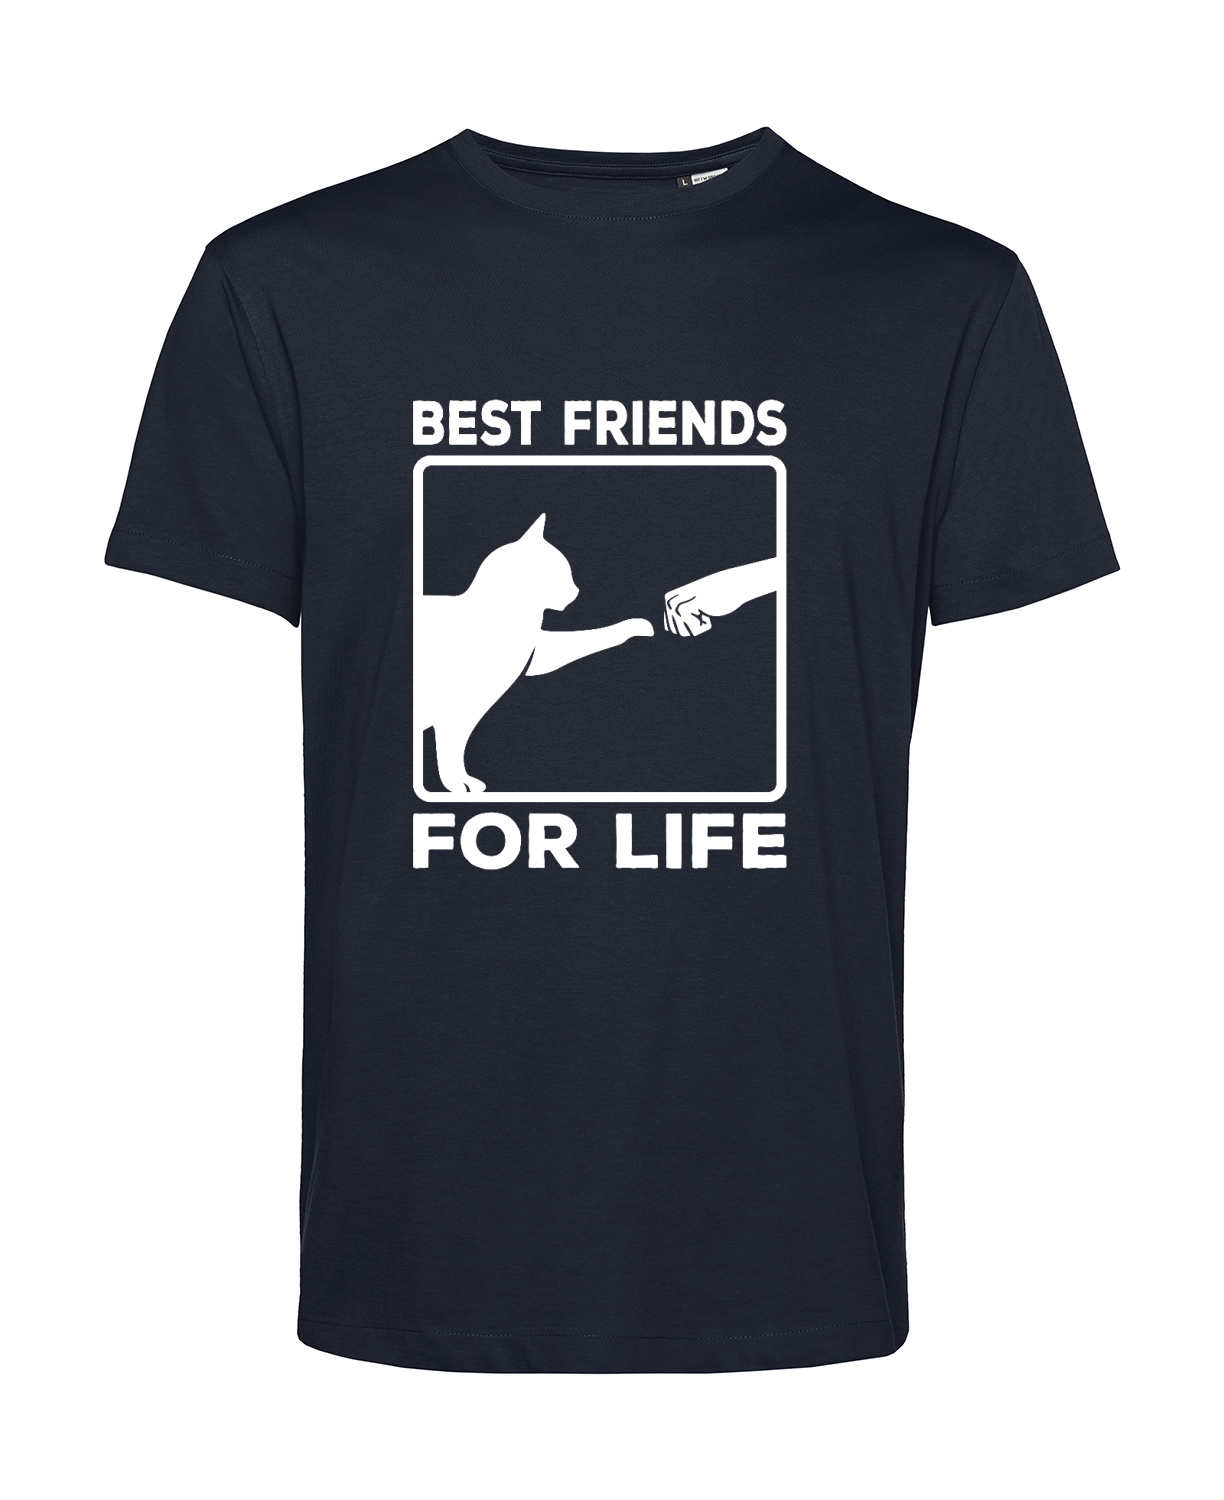 Nachhaltiges T-Shirt Herren Katzen - Best friends for life